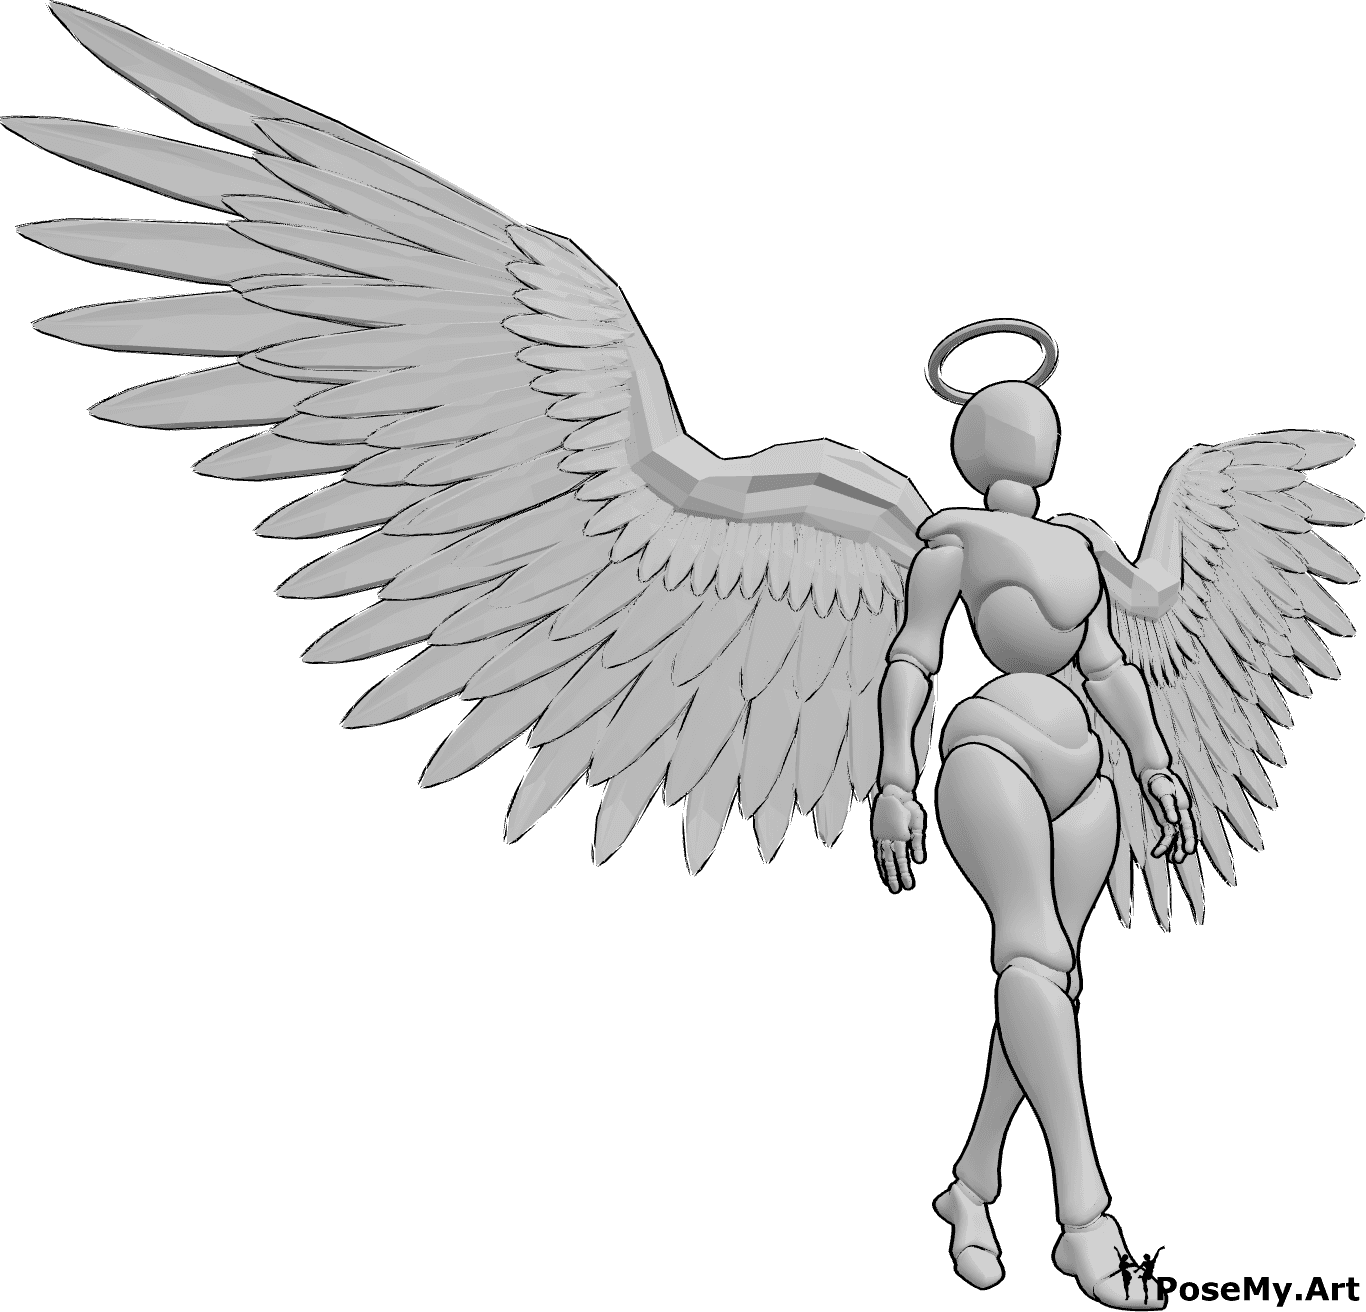 Referencia de poses- Postura de ángel femenino caminando - Un ángel femenino camina lentamente con las alas abiertas y mirando al frente